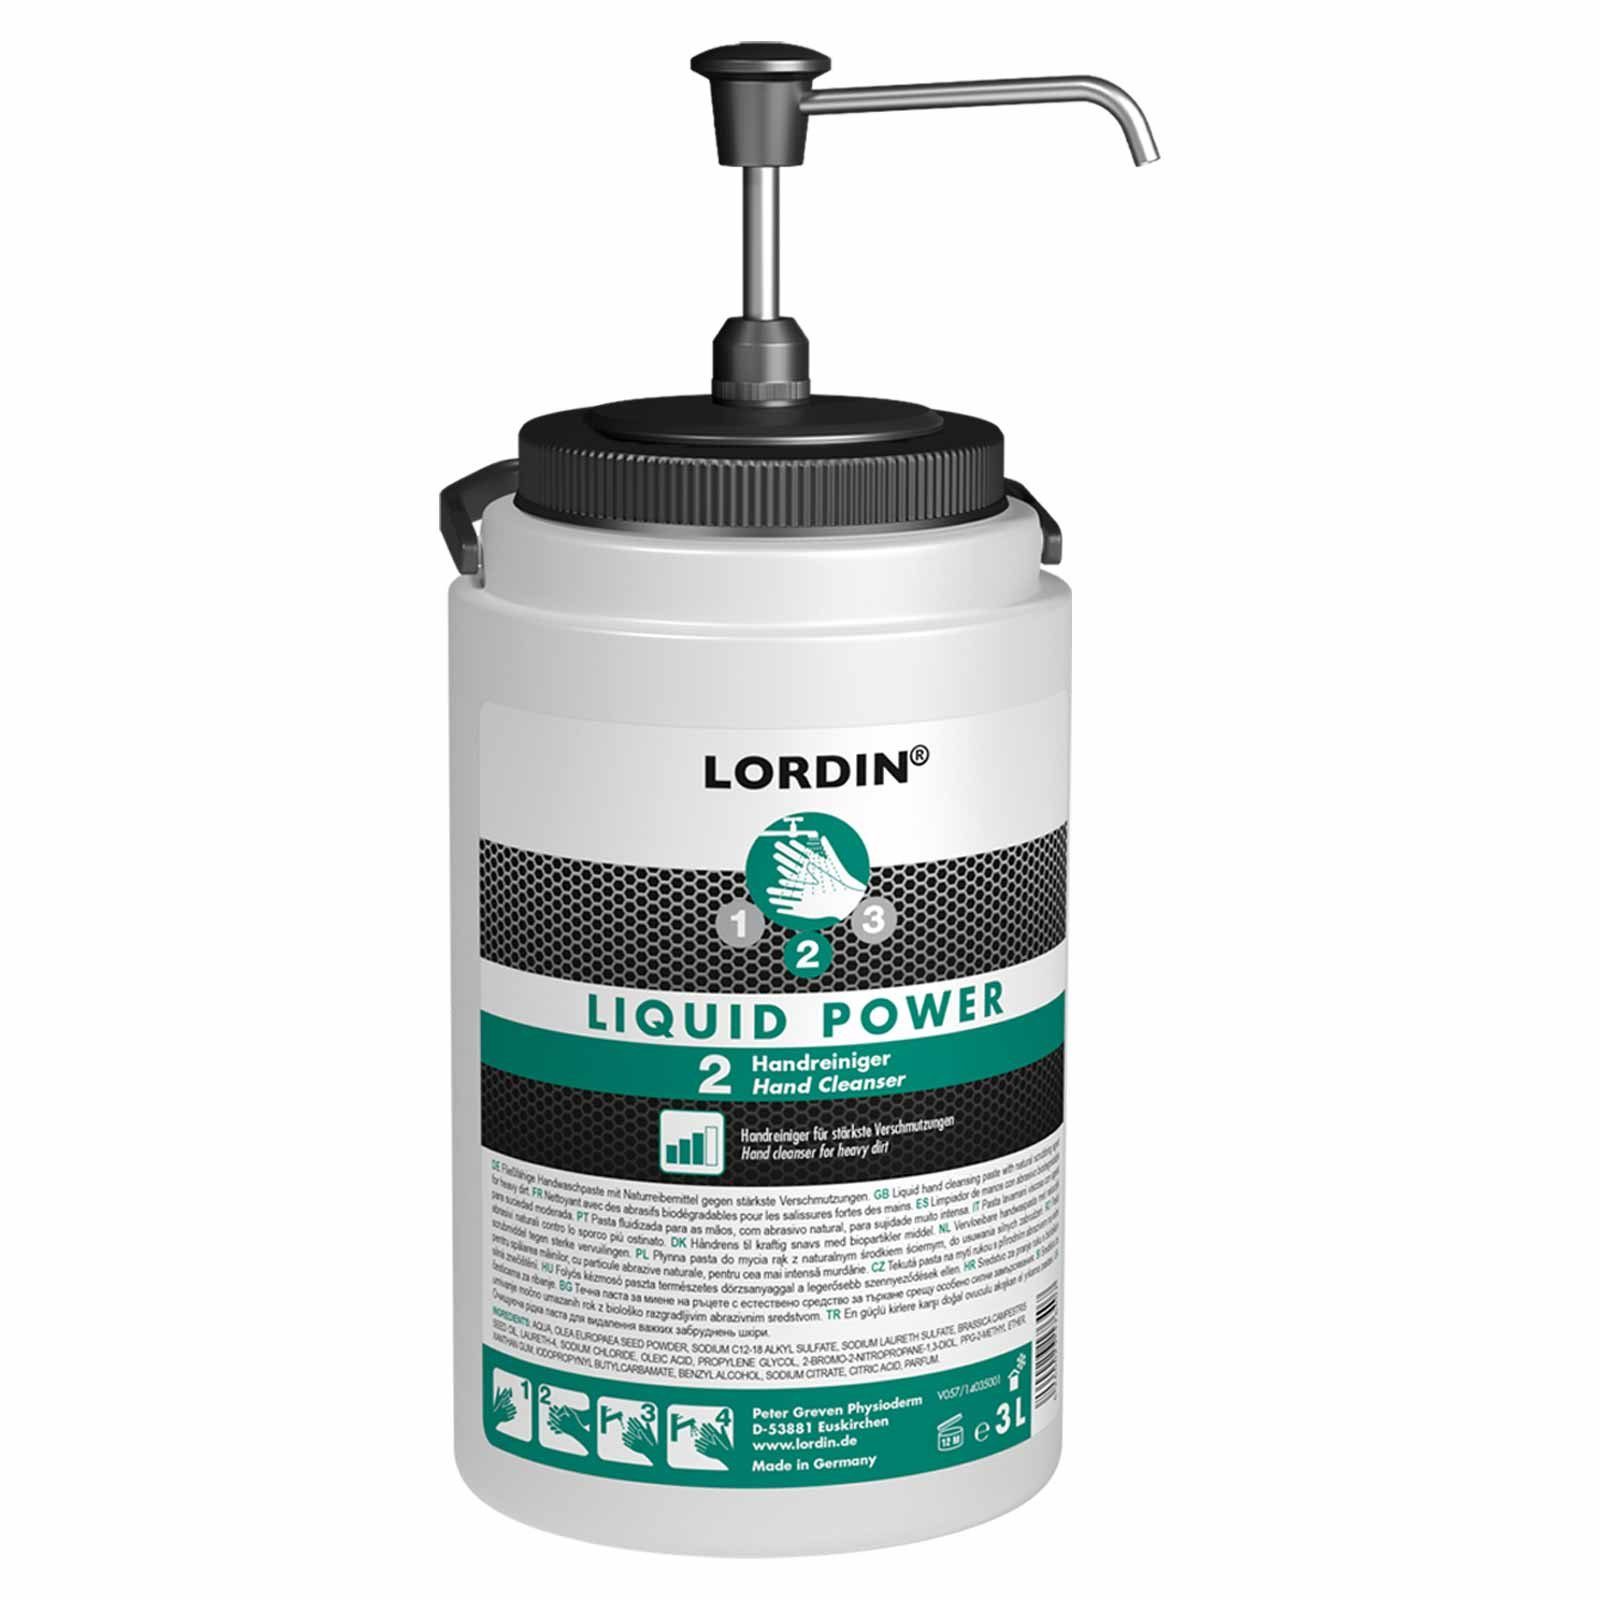 Power Handcreme Schmutz starker Lordin + Dosierer Handreiniger Handwaschpaste Liquid